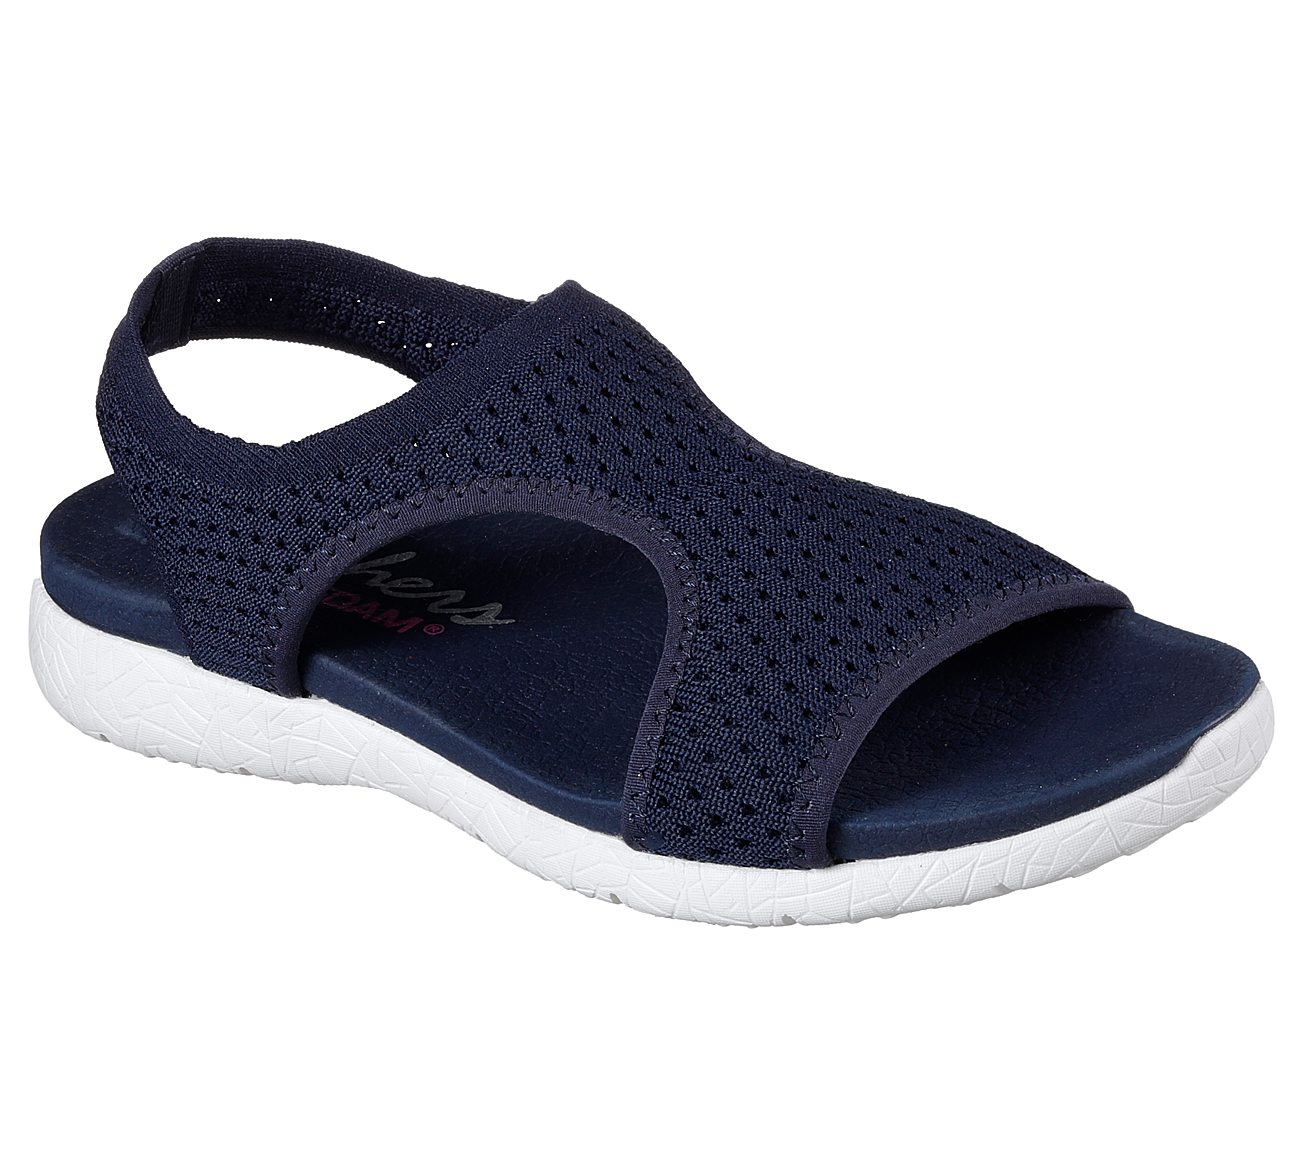 skechers comfort sandals